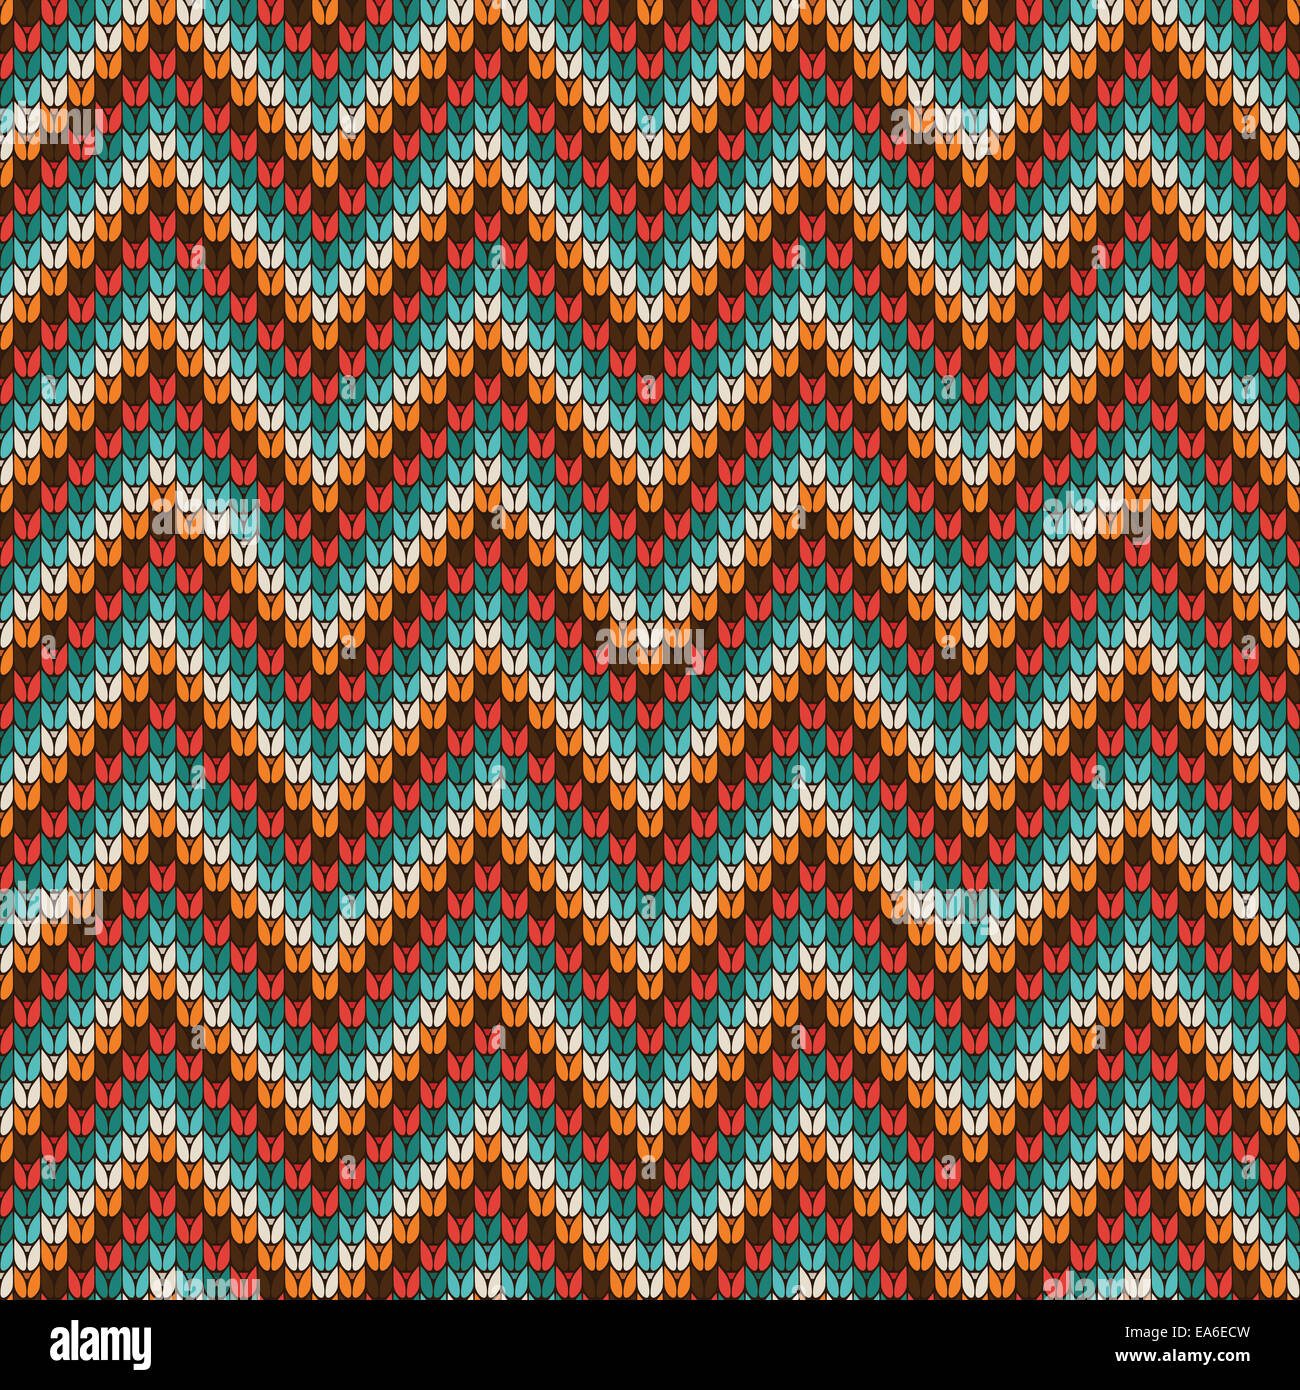 Seamless Zigzag knitting pattern Stock Photo